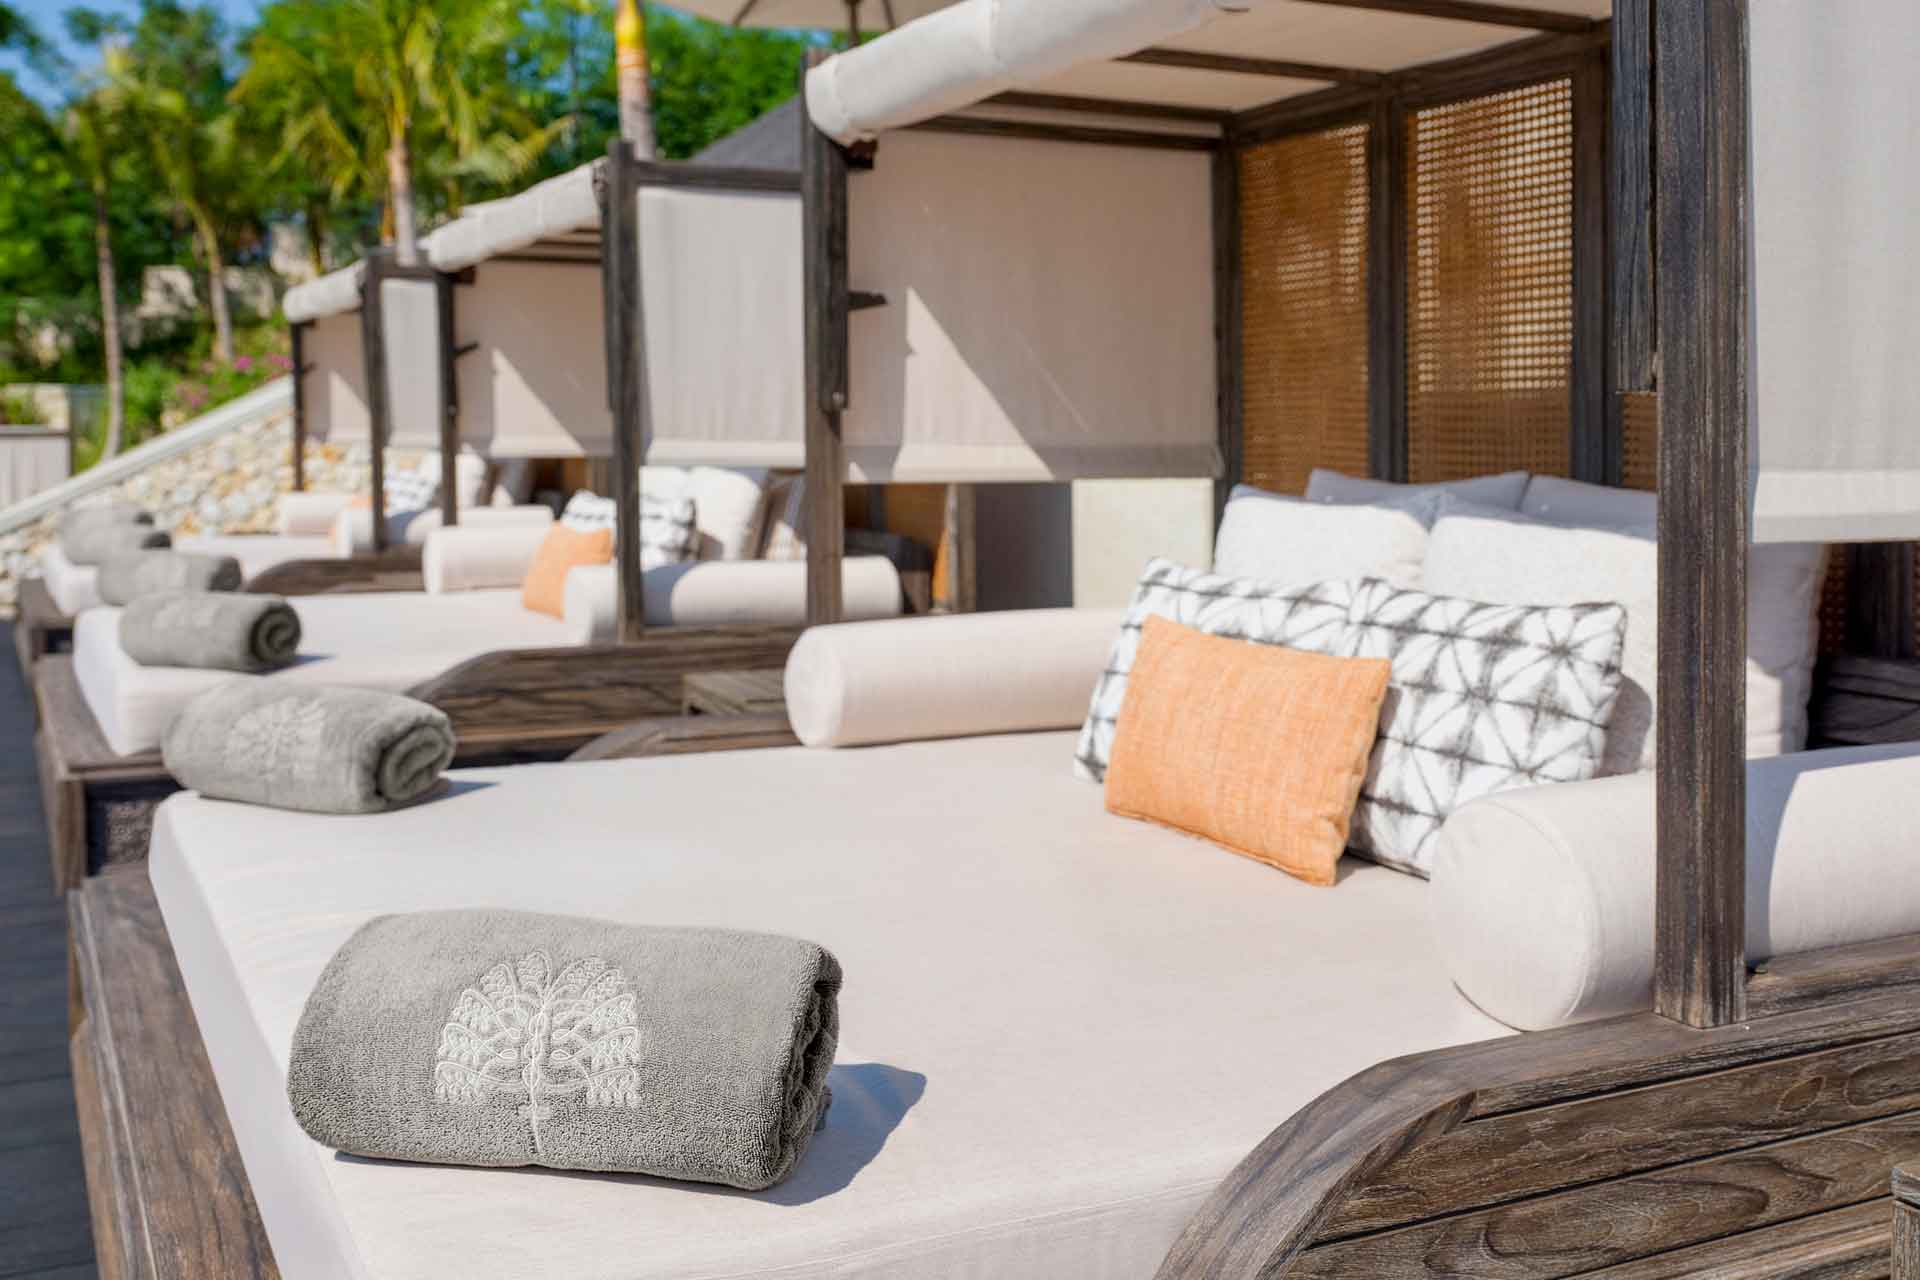 Pool cabanas at Raffles Bali, with grey towels and orange cushions